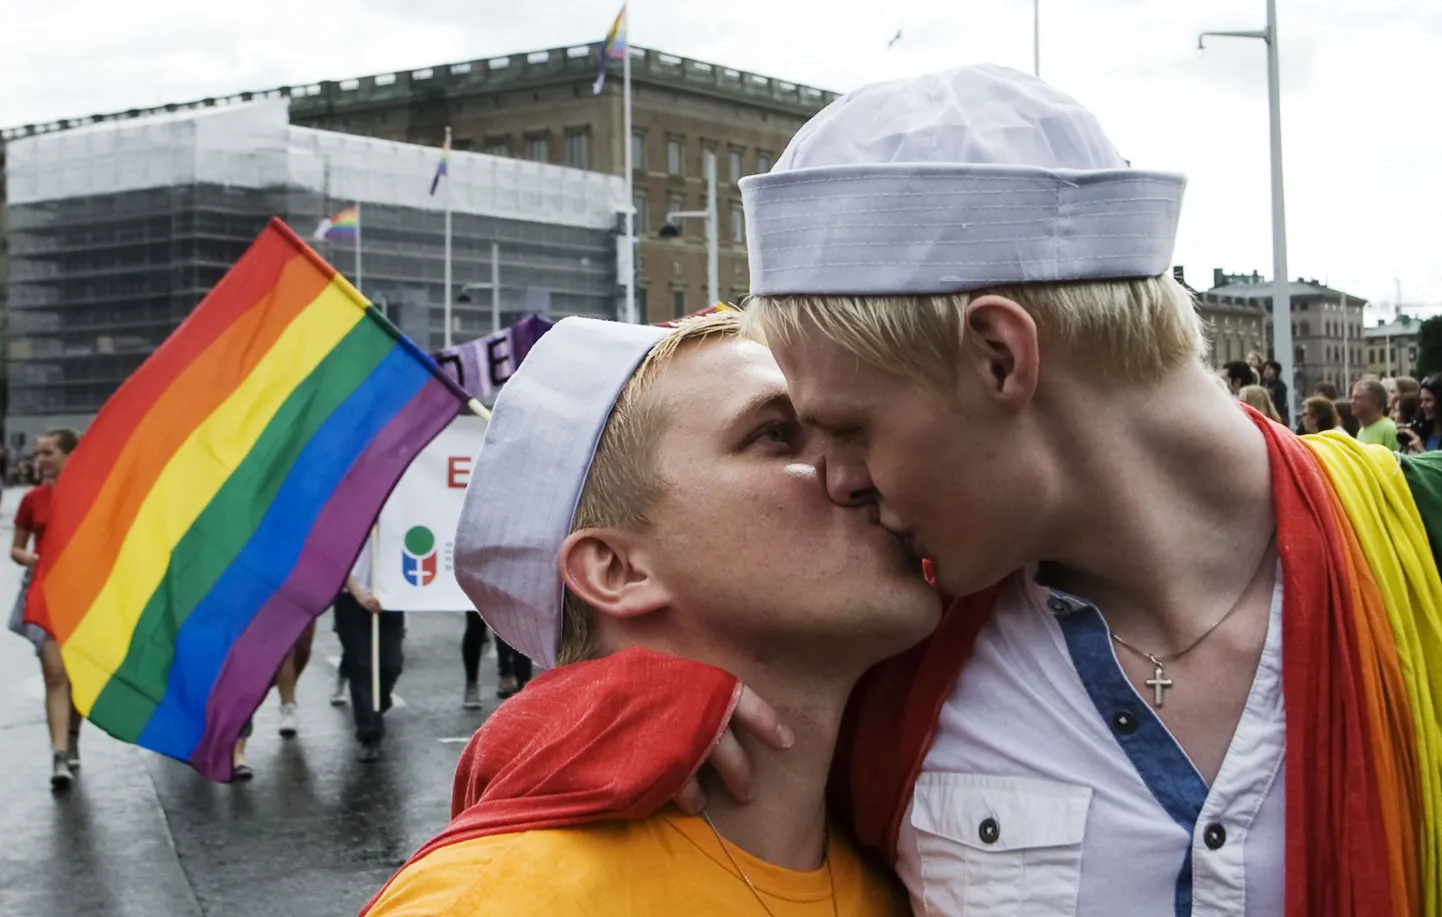 Гей-парад в Стокгольме. Снимок иллюстративный.